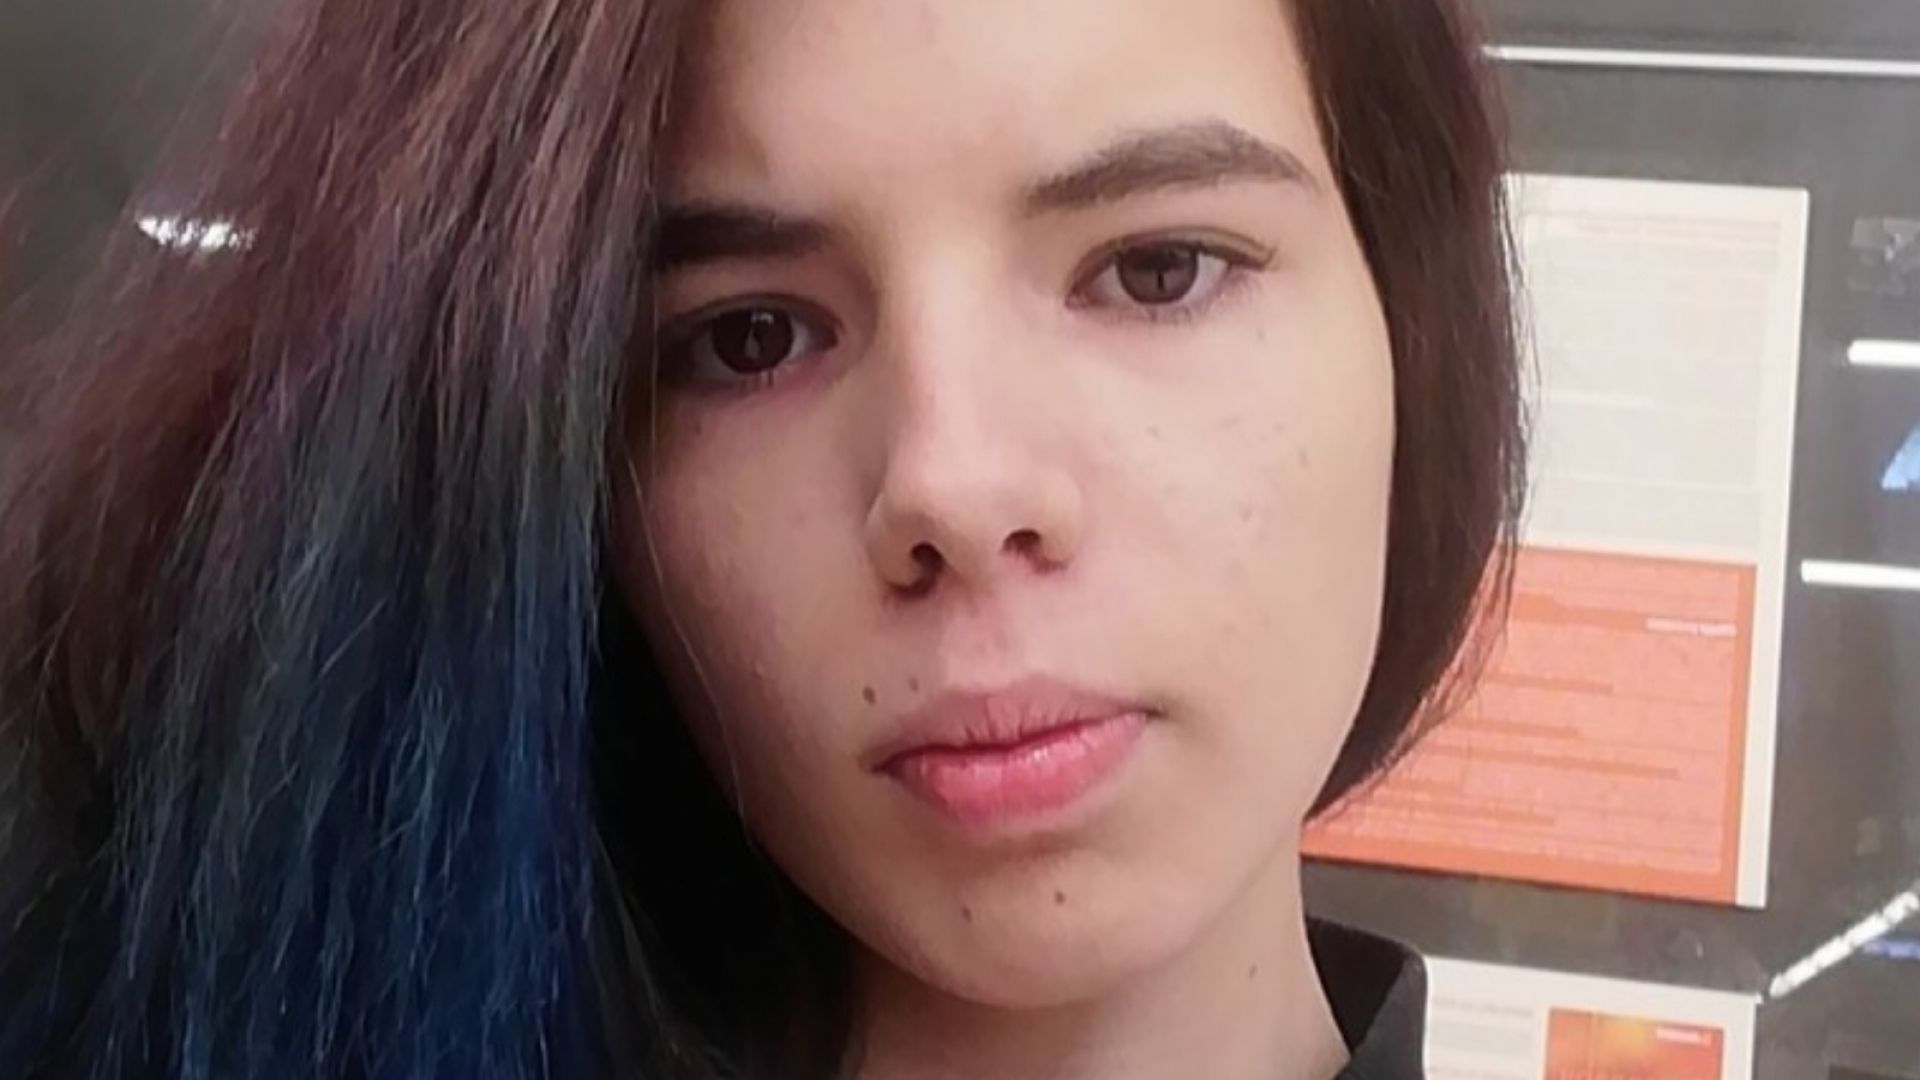 Полицията издирва 16 годишната Зорница Красимирова Петрова от София На 10